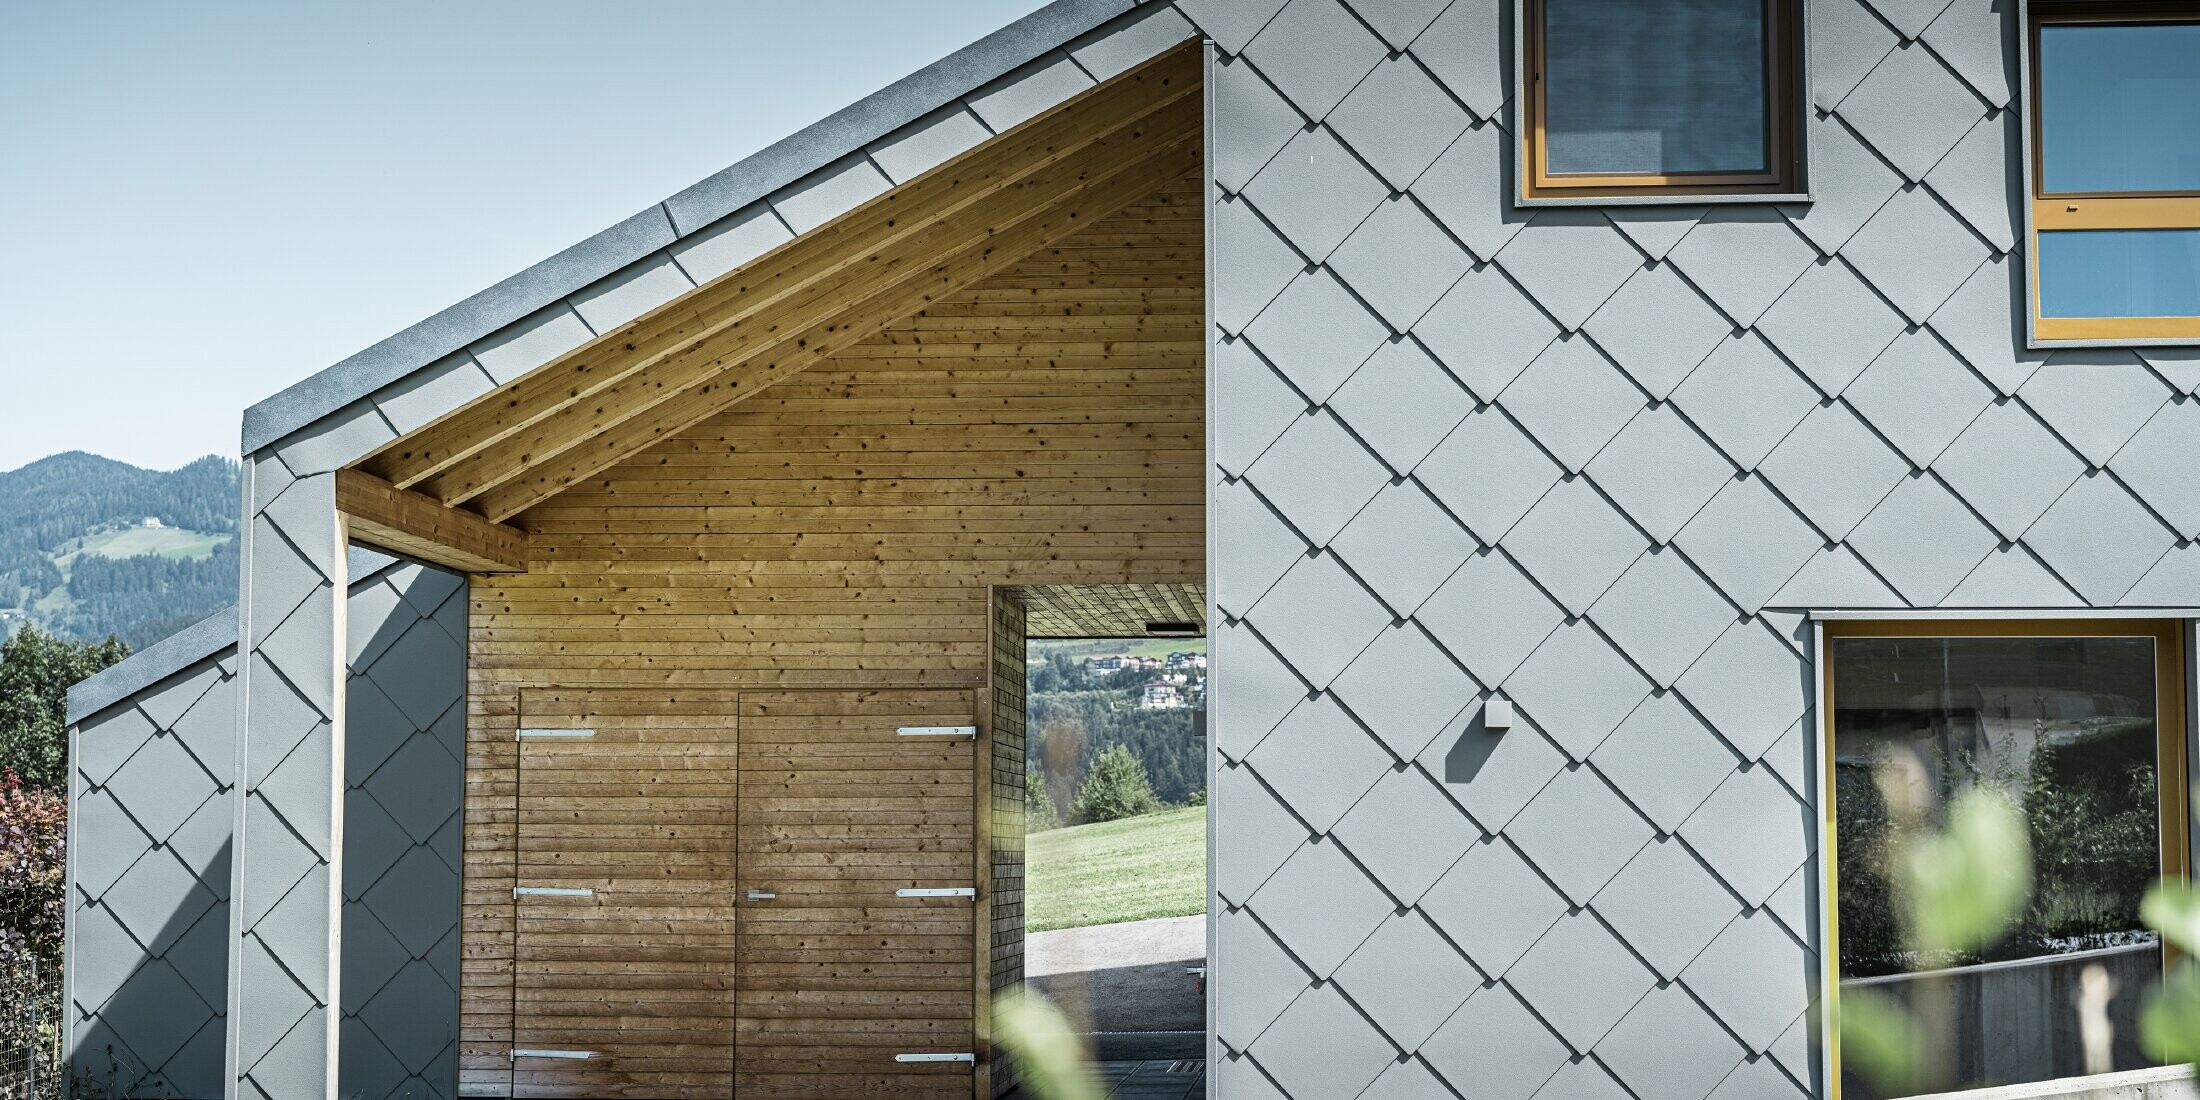 Zakrytý vstupní prostor je proveden horizontálním dřevěným obkladem, zbytek fasády je opláštěn velkformátovou hliníkovou fasádní šablonou 44 x 44 PREFA ve světle šedé barvě